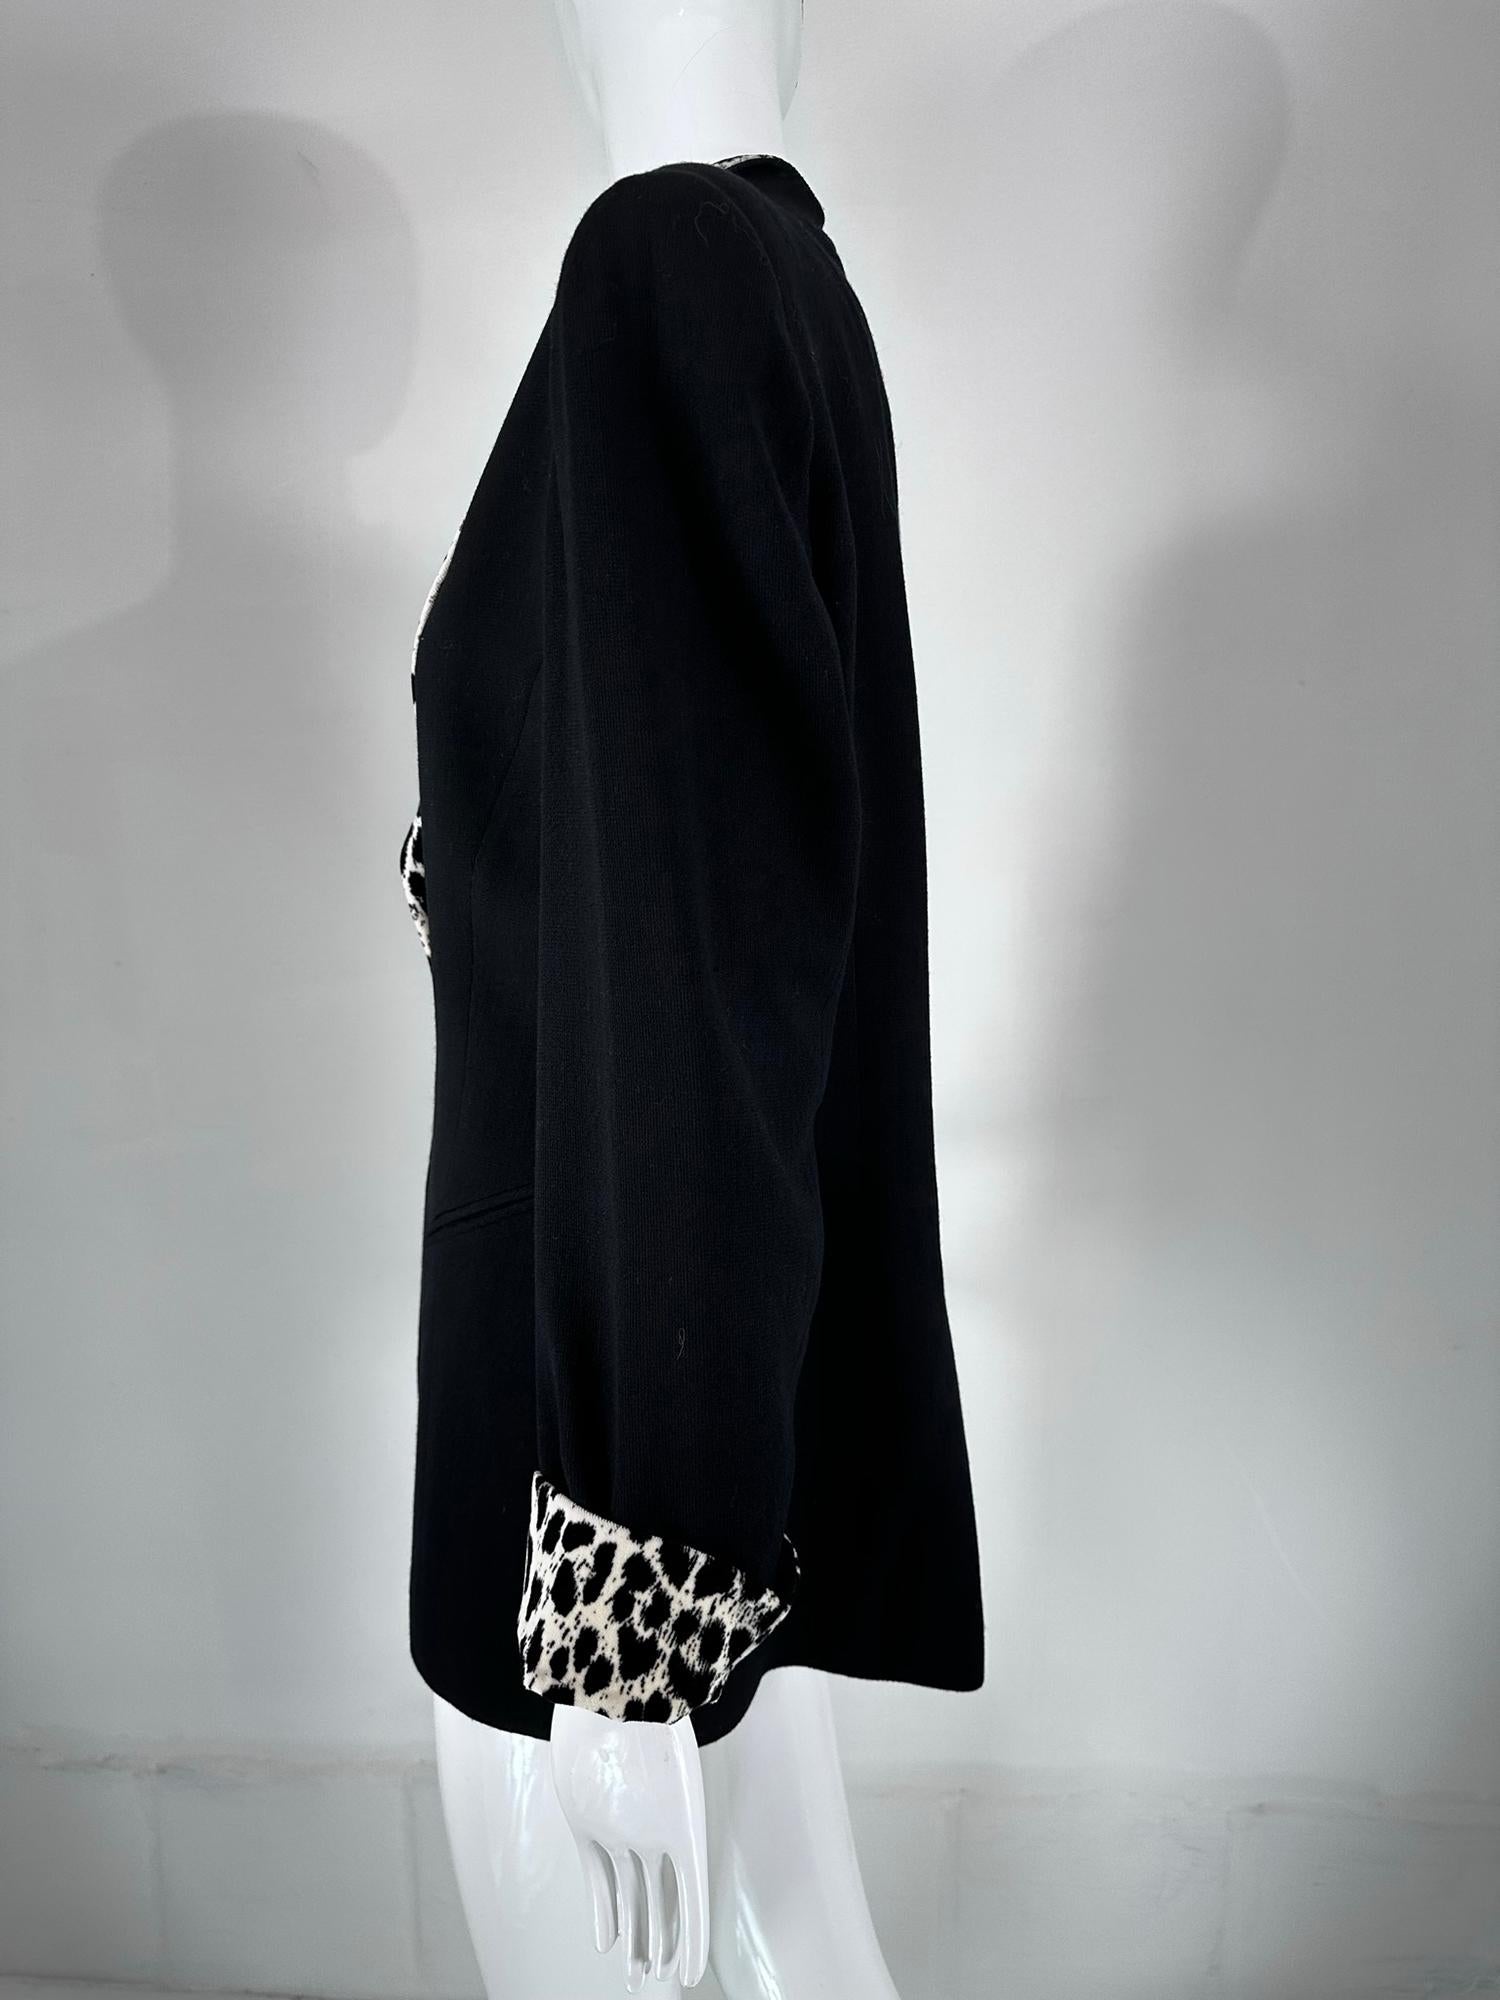 Christian Dior Black Princess Seam Tuxedo Jacket Black White Velvet Lapels 1990s For Sale 4